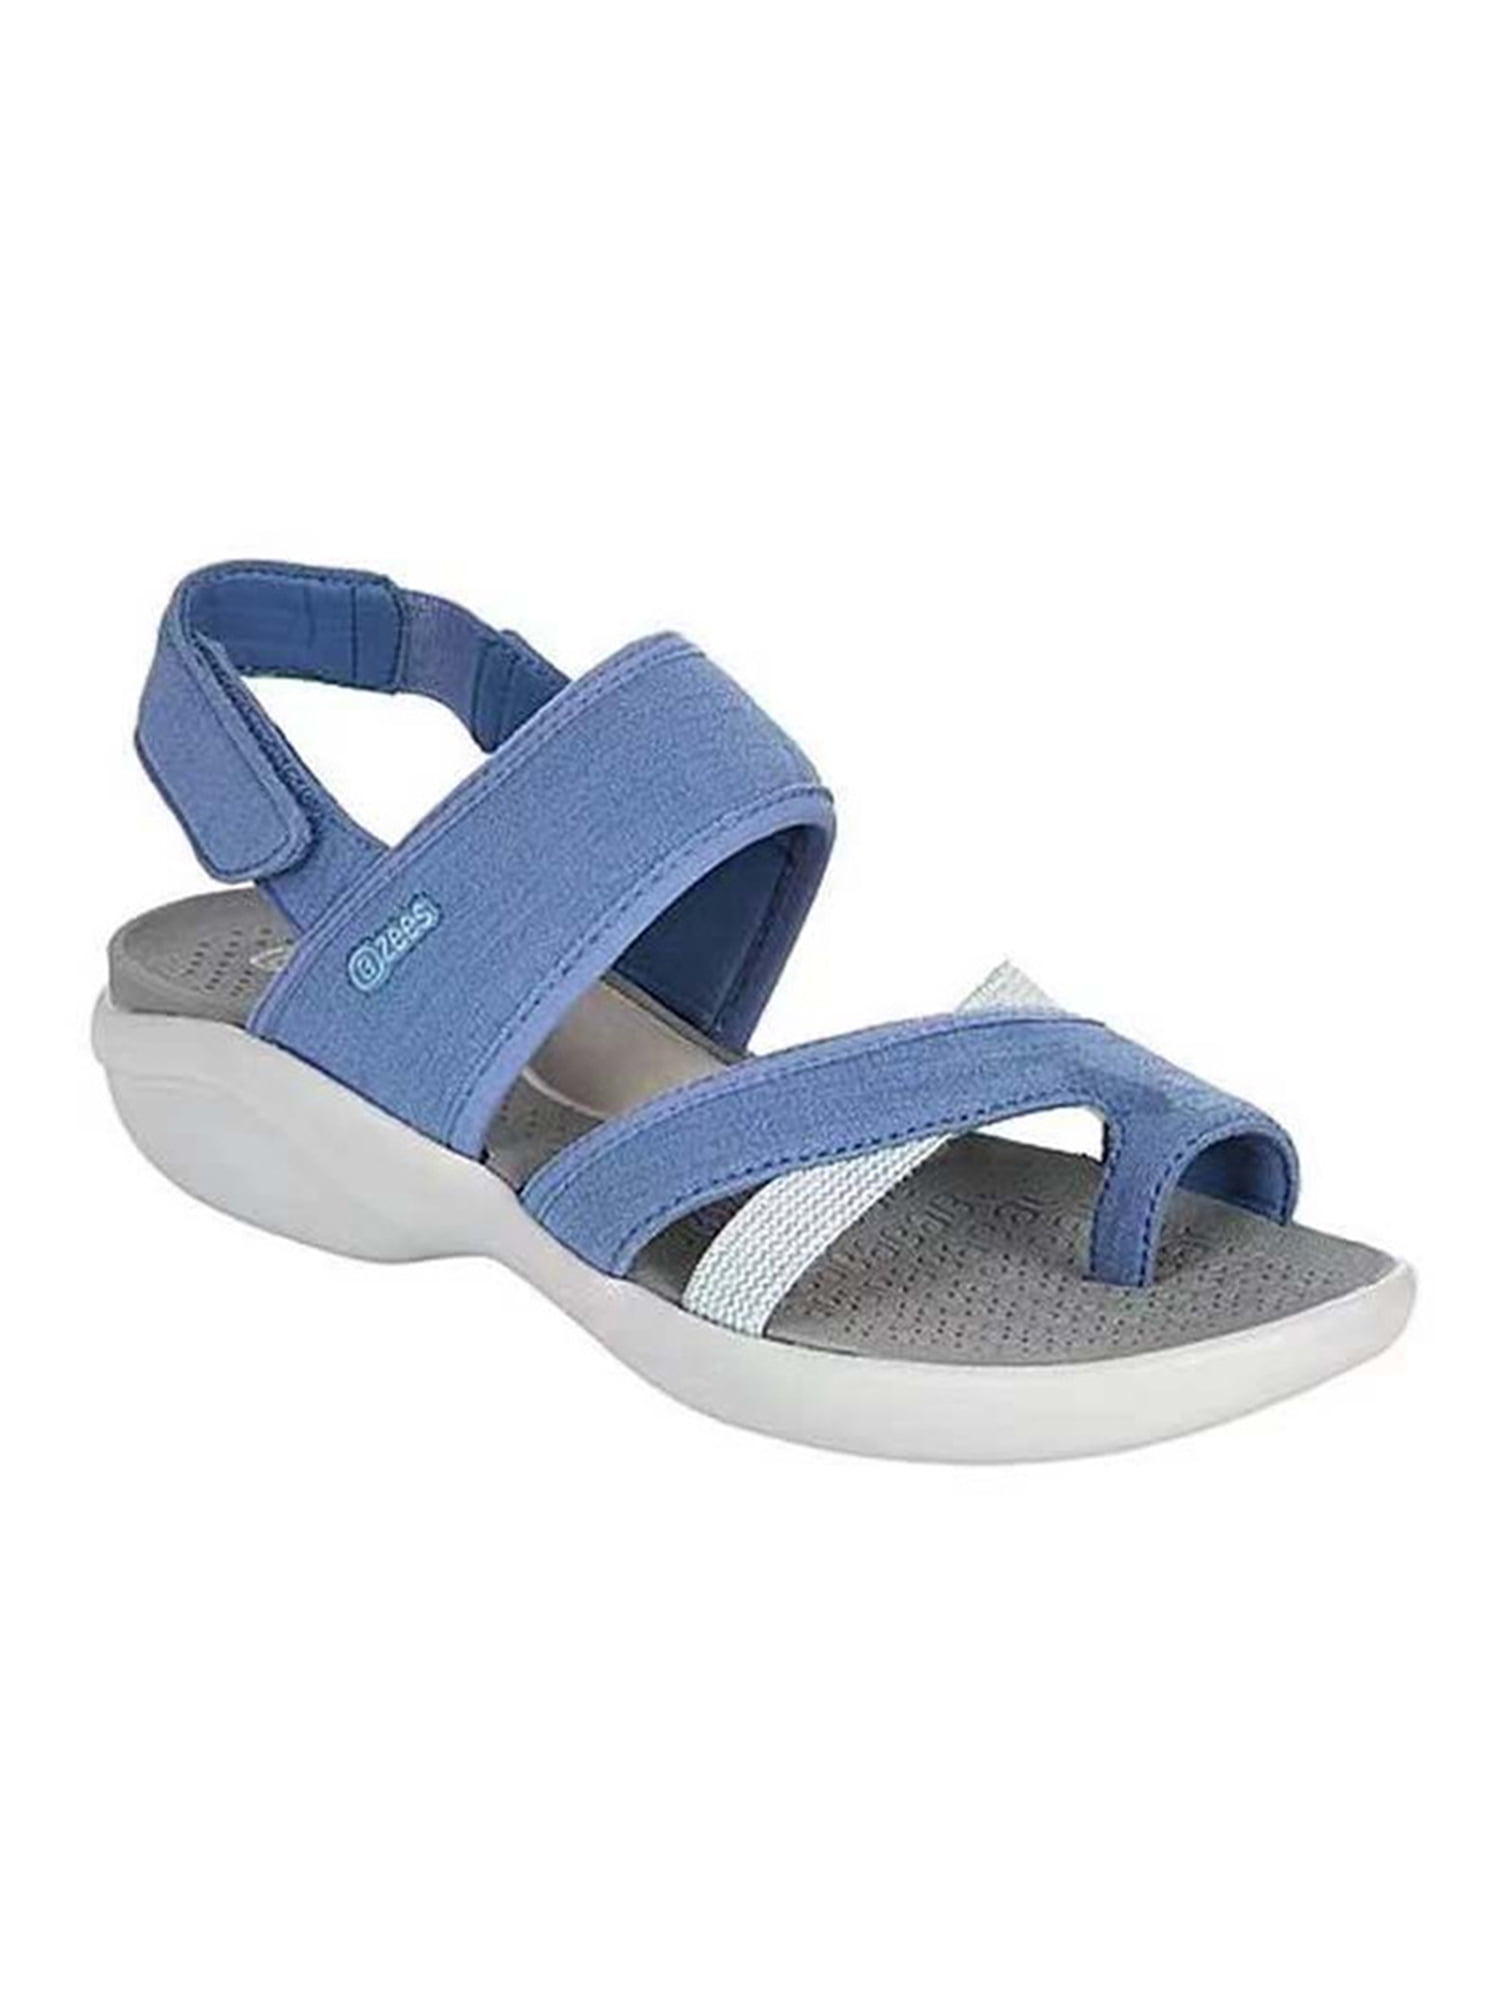 Shoes Sandals Flip-Flop Sandals Havaianas Flip-Flop Sandals blue flower pattern casual look 